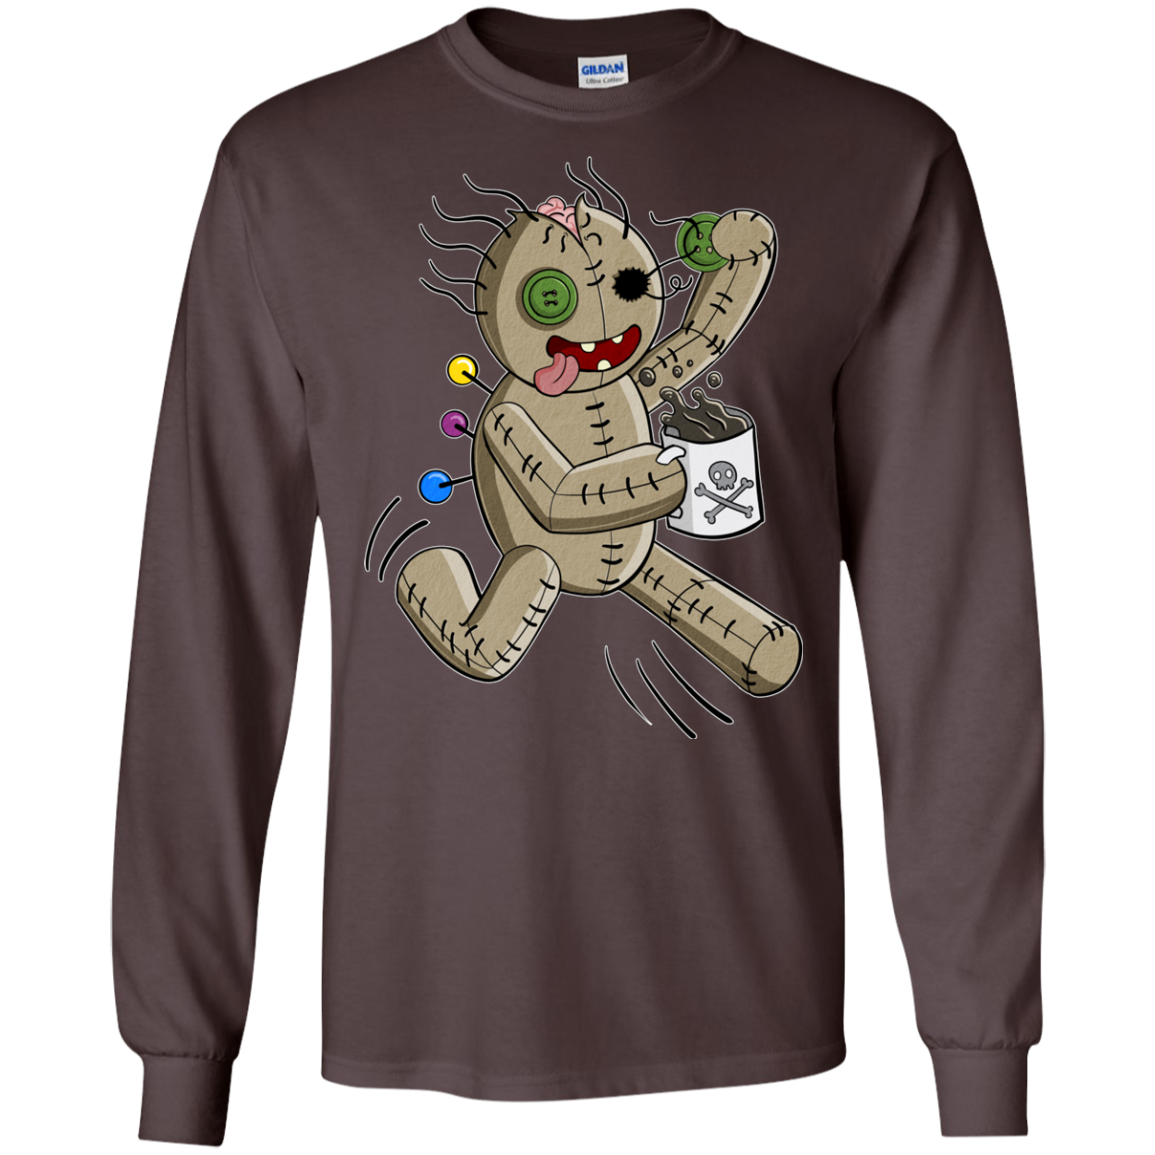 Voodoo Coffee Runner Long Sleeve T-Shirt